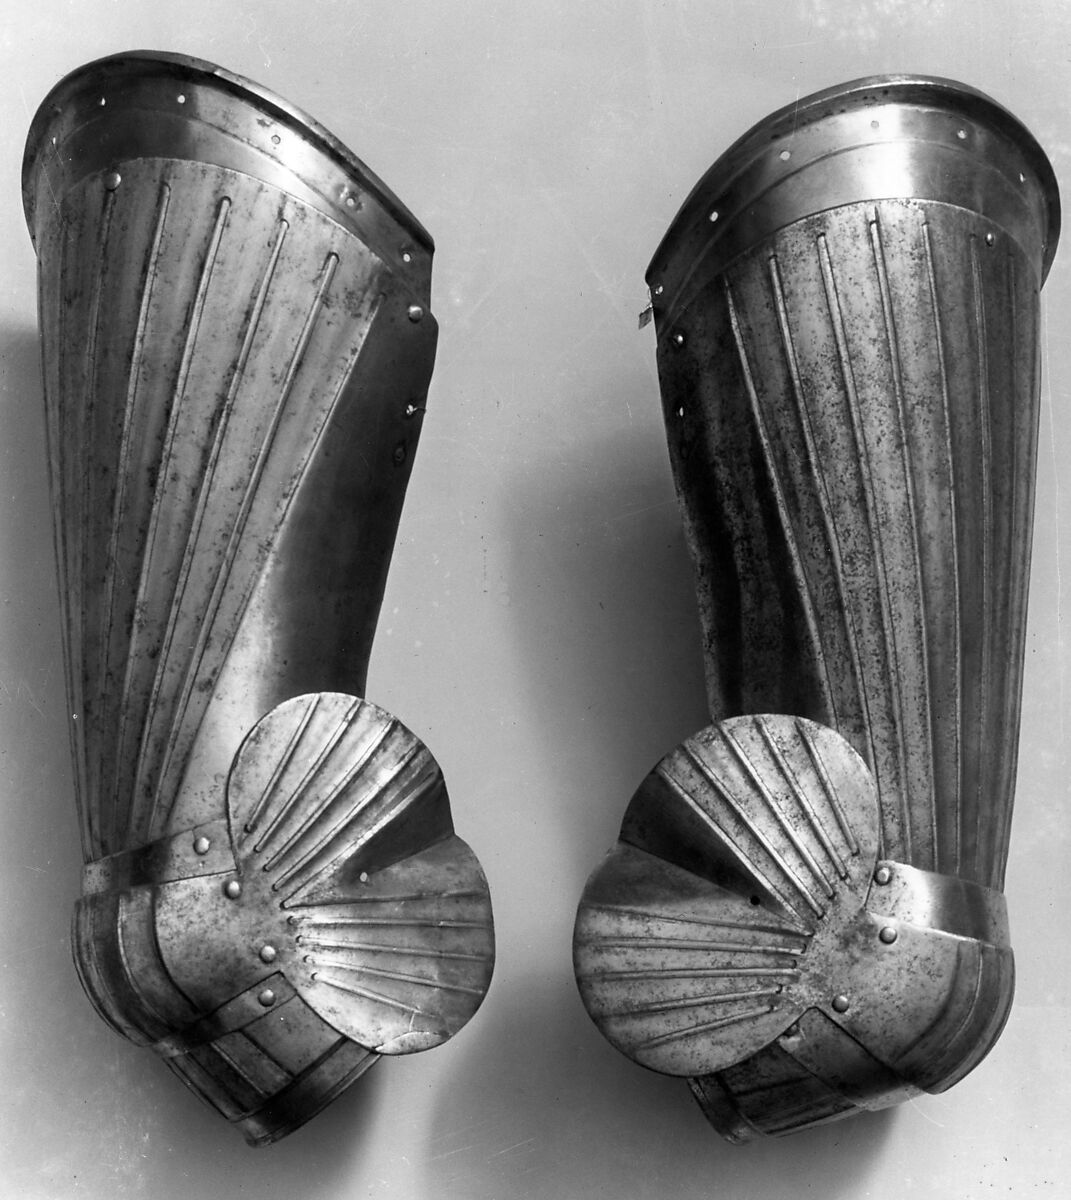 Pair of Thigh Defenses (Cuisses) with Knee Defenses (Poleyns), Steel, German, Nuremberg 